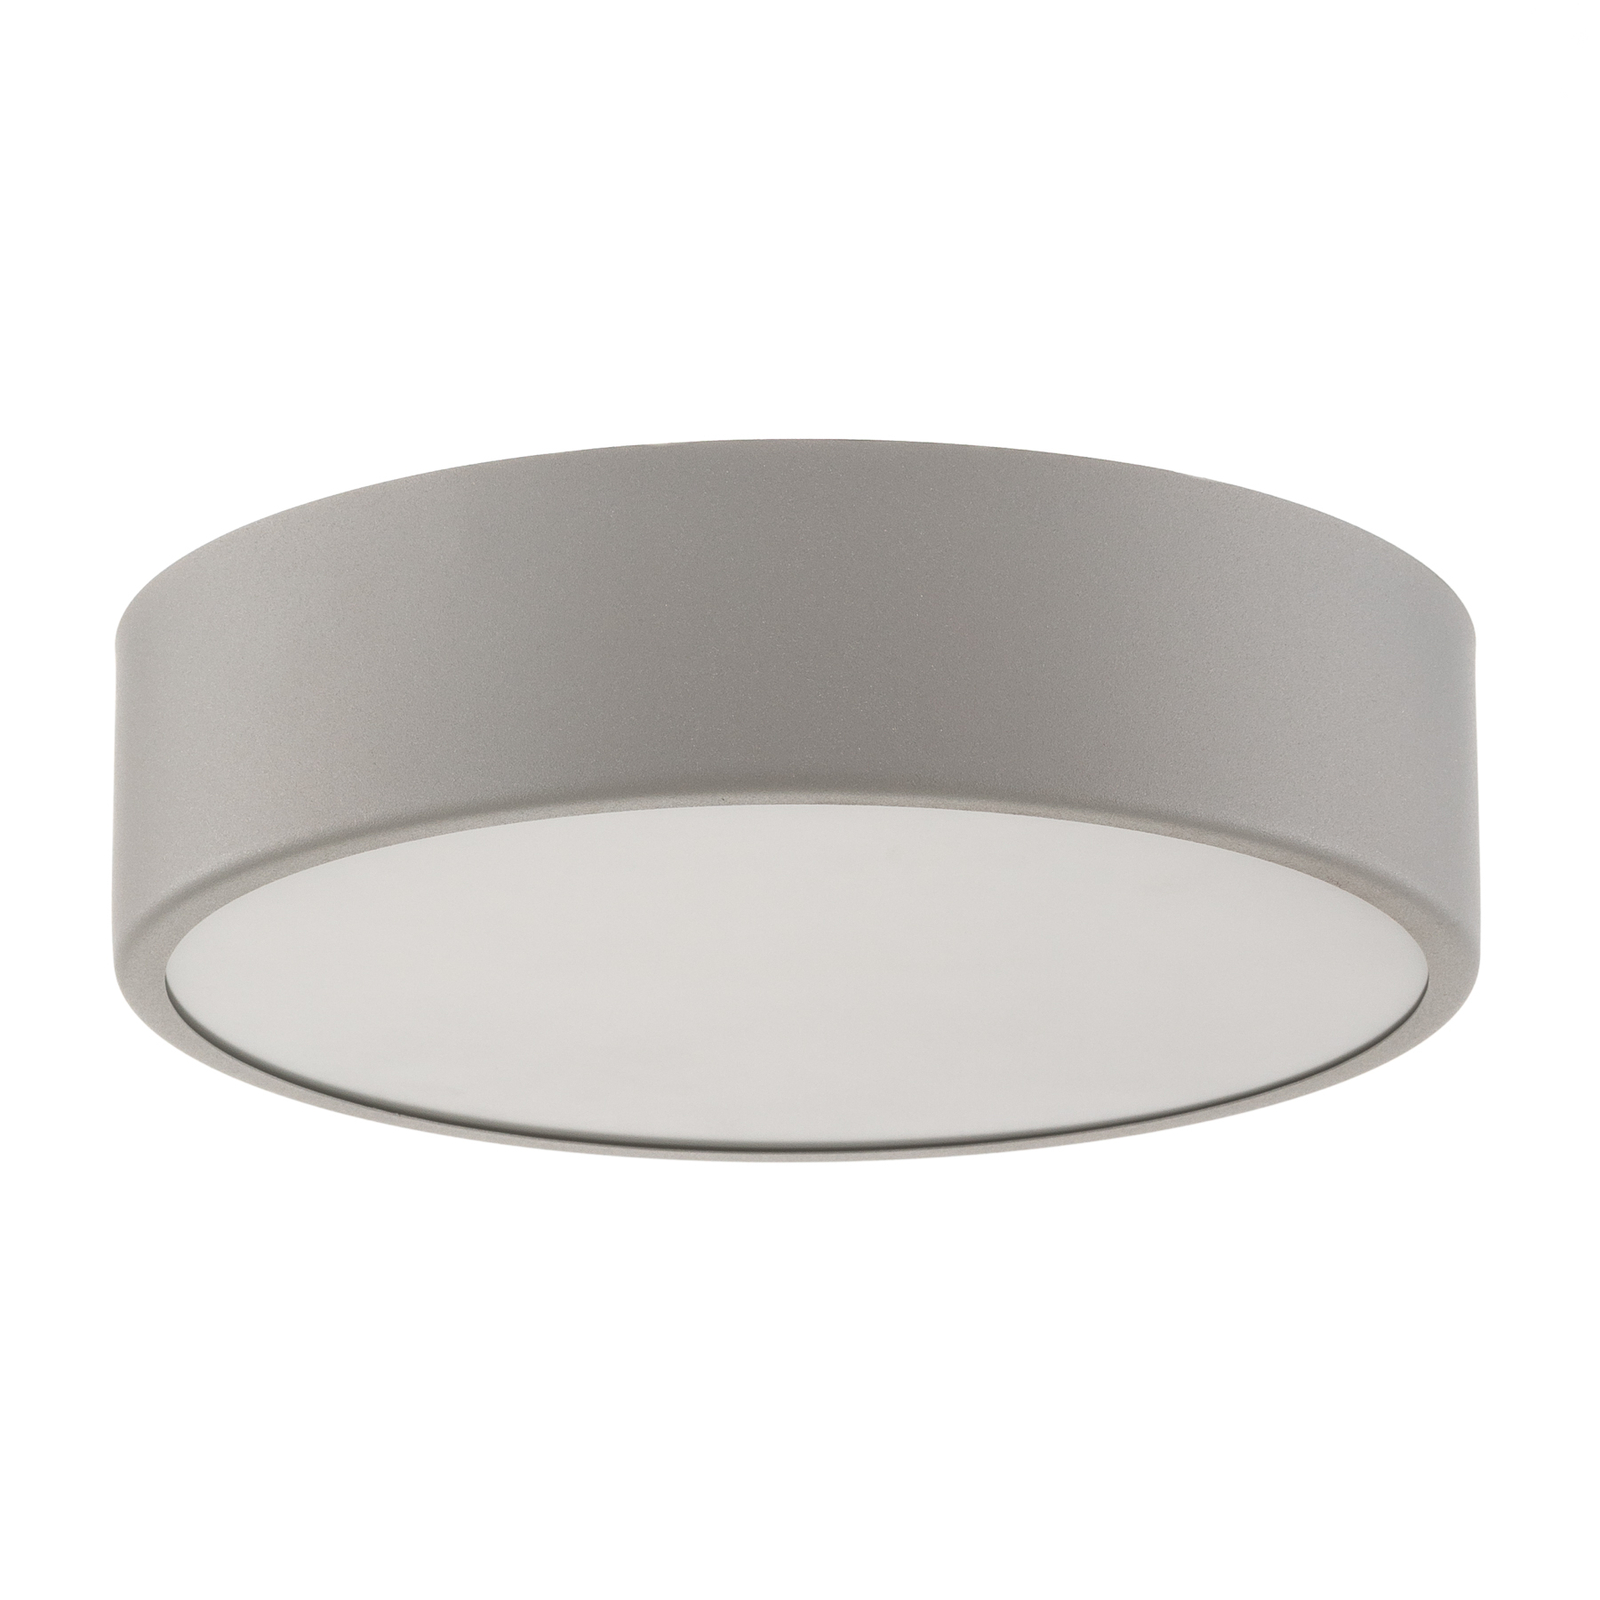 Cleo 300 ceiling light, sensor, Ø 30 cm grey